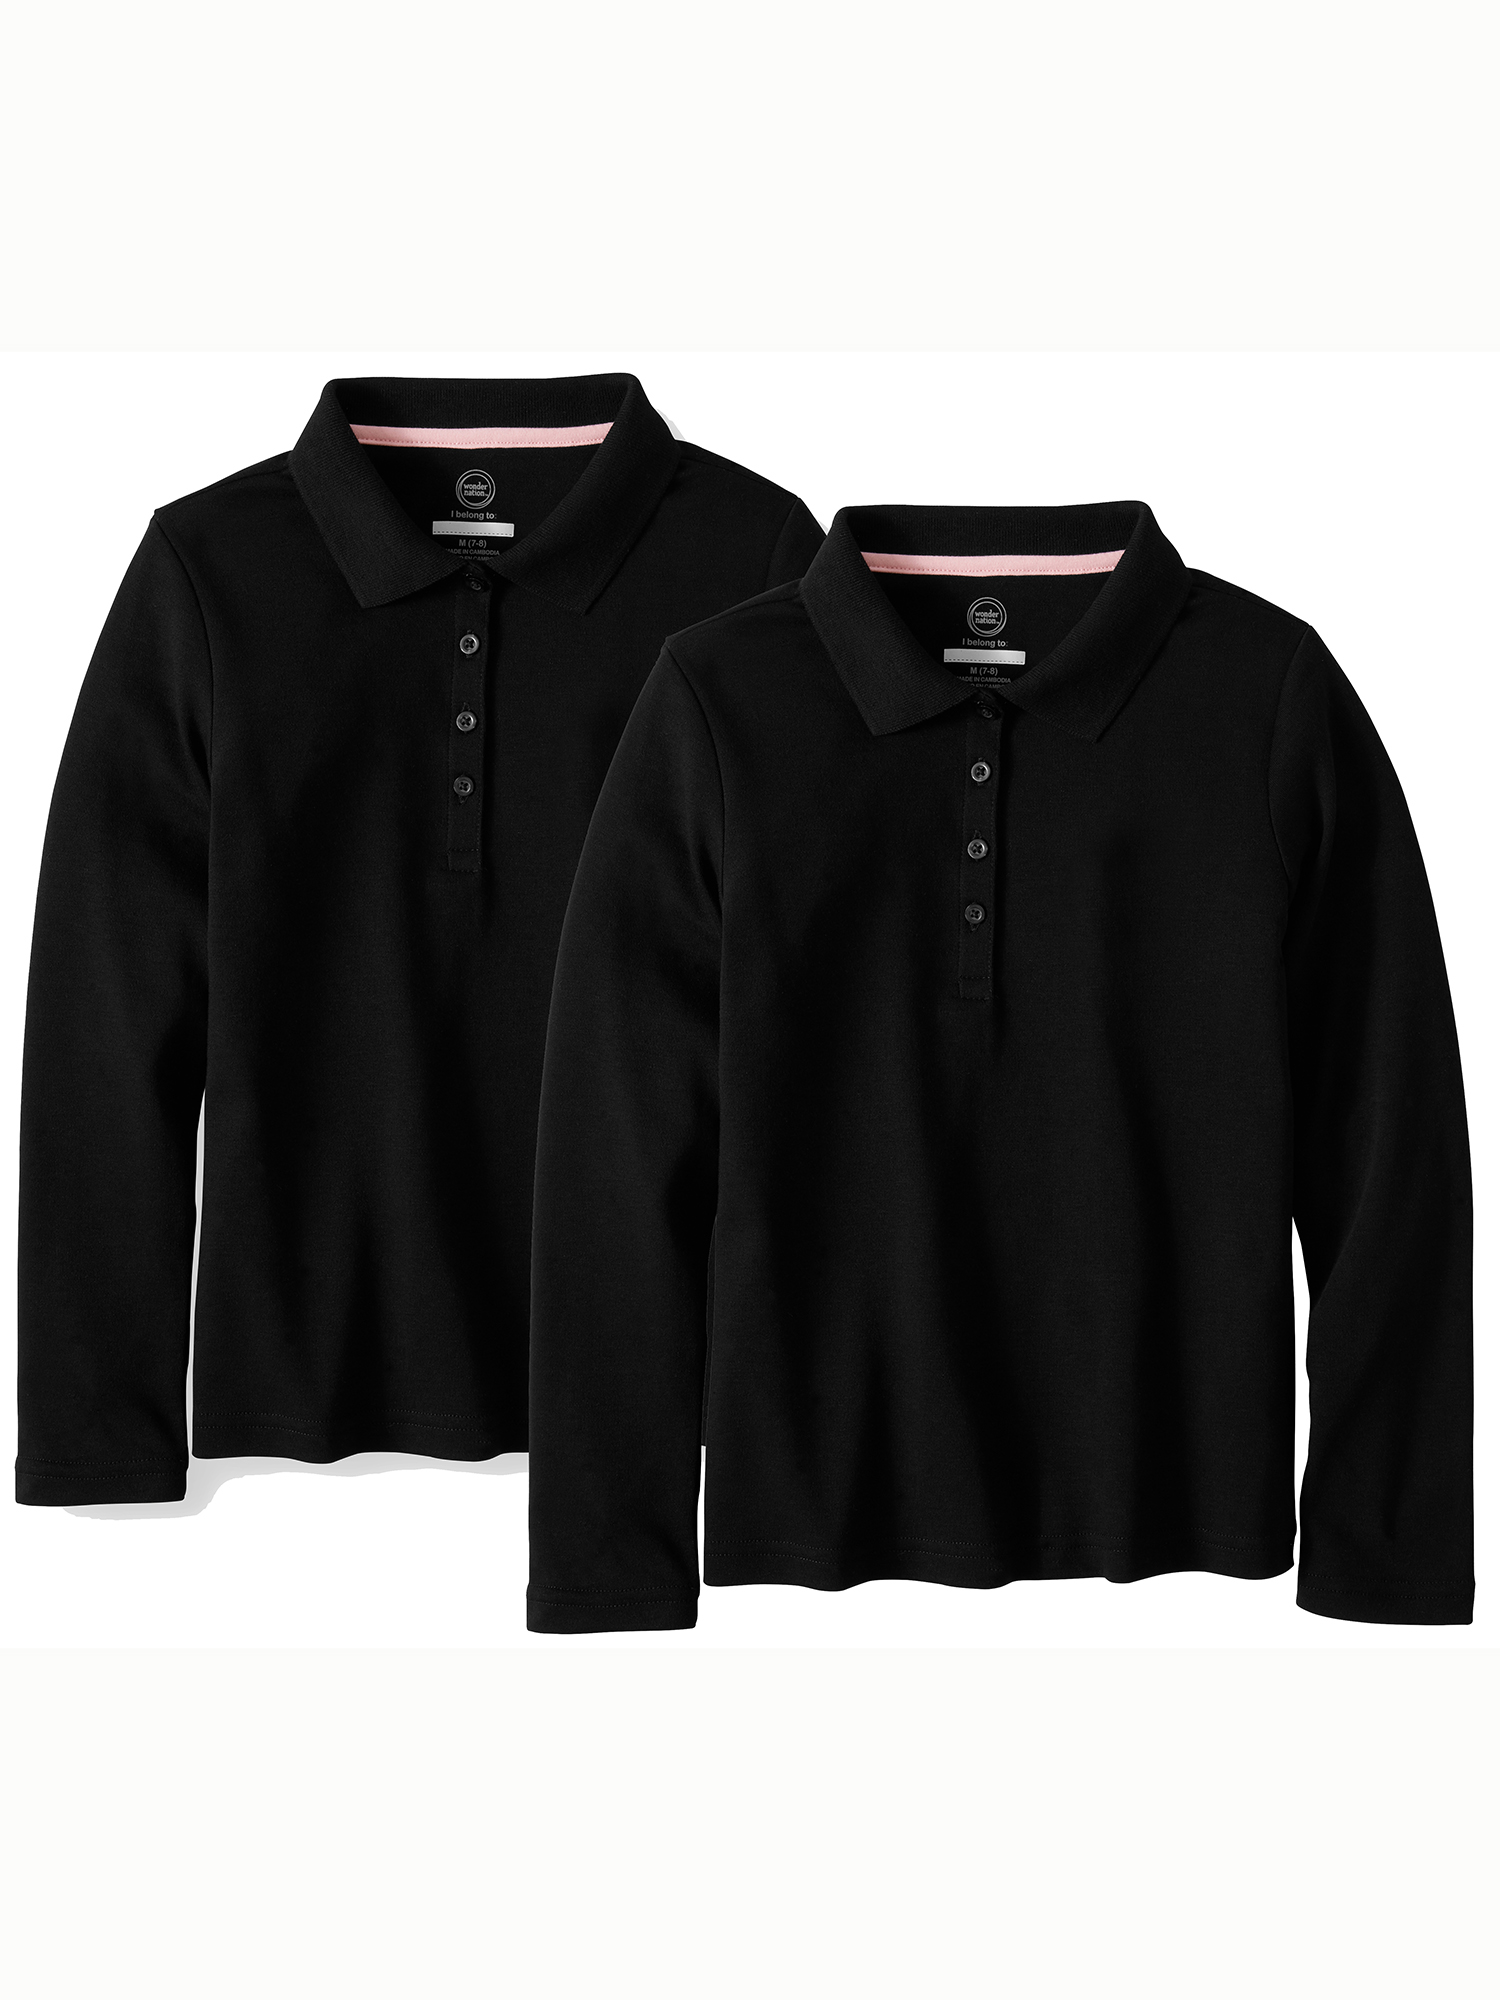 Wonder Nation Girls School Uniform Long Sleeve Interlock Polo Shirt, 2-Pack Value Bundle, Sizes 4-18 - image 1 of 1